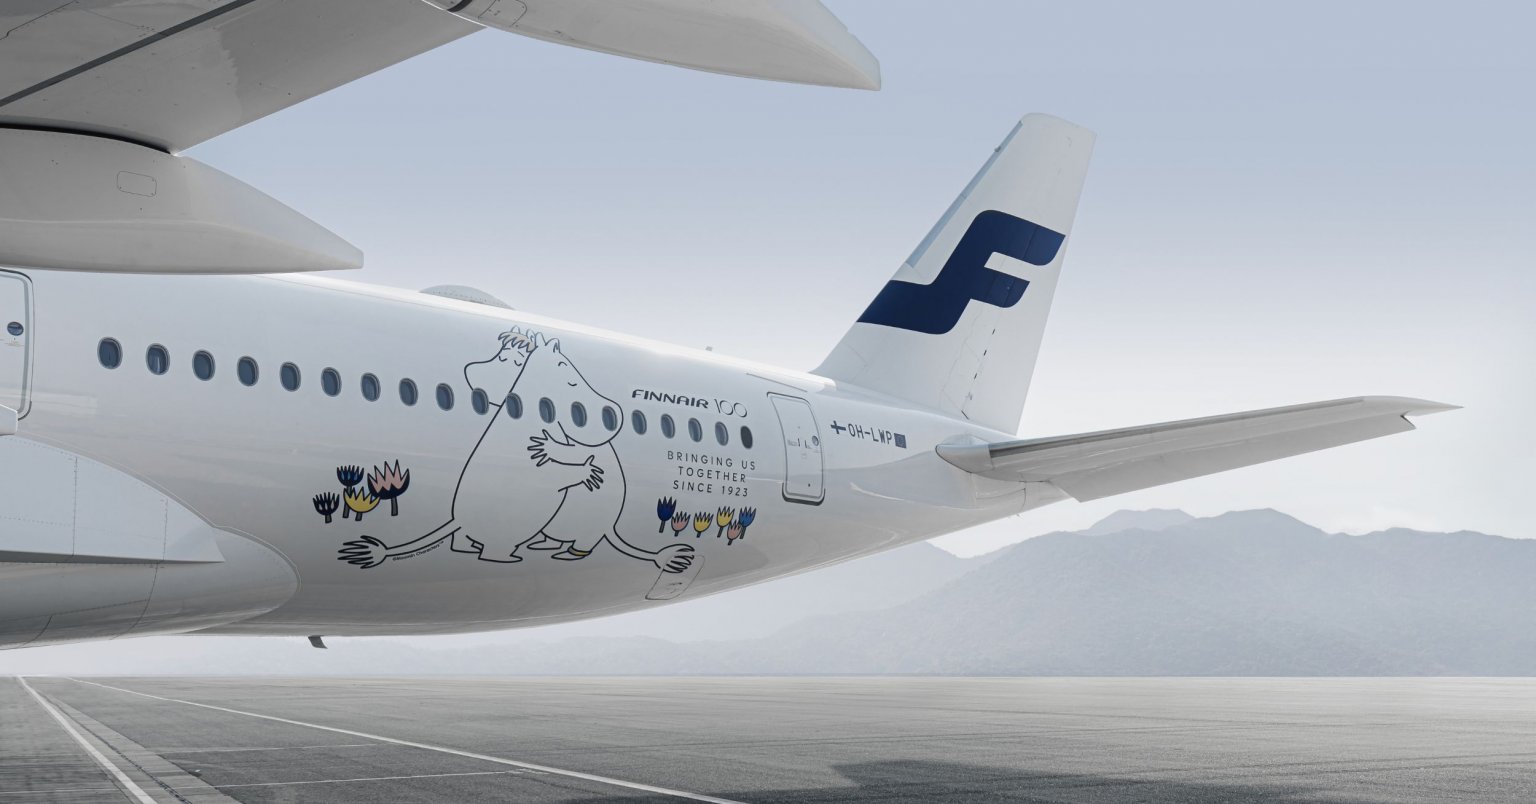 Finnair añade más vuelos a destinos de ocio nórdicos - Finnair: opiniones y dudas - Foro Aviones, Aeropuertos y Líneas Aéreas